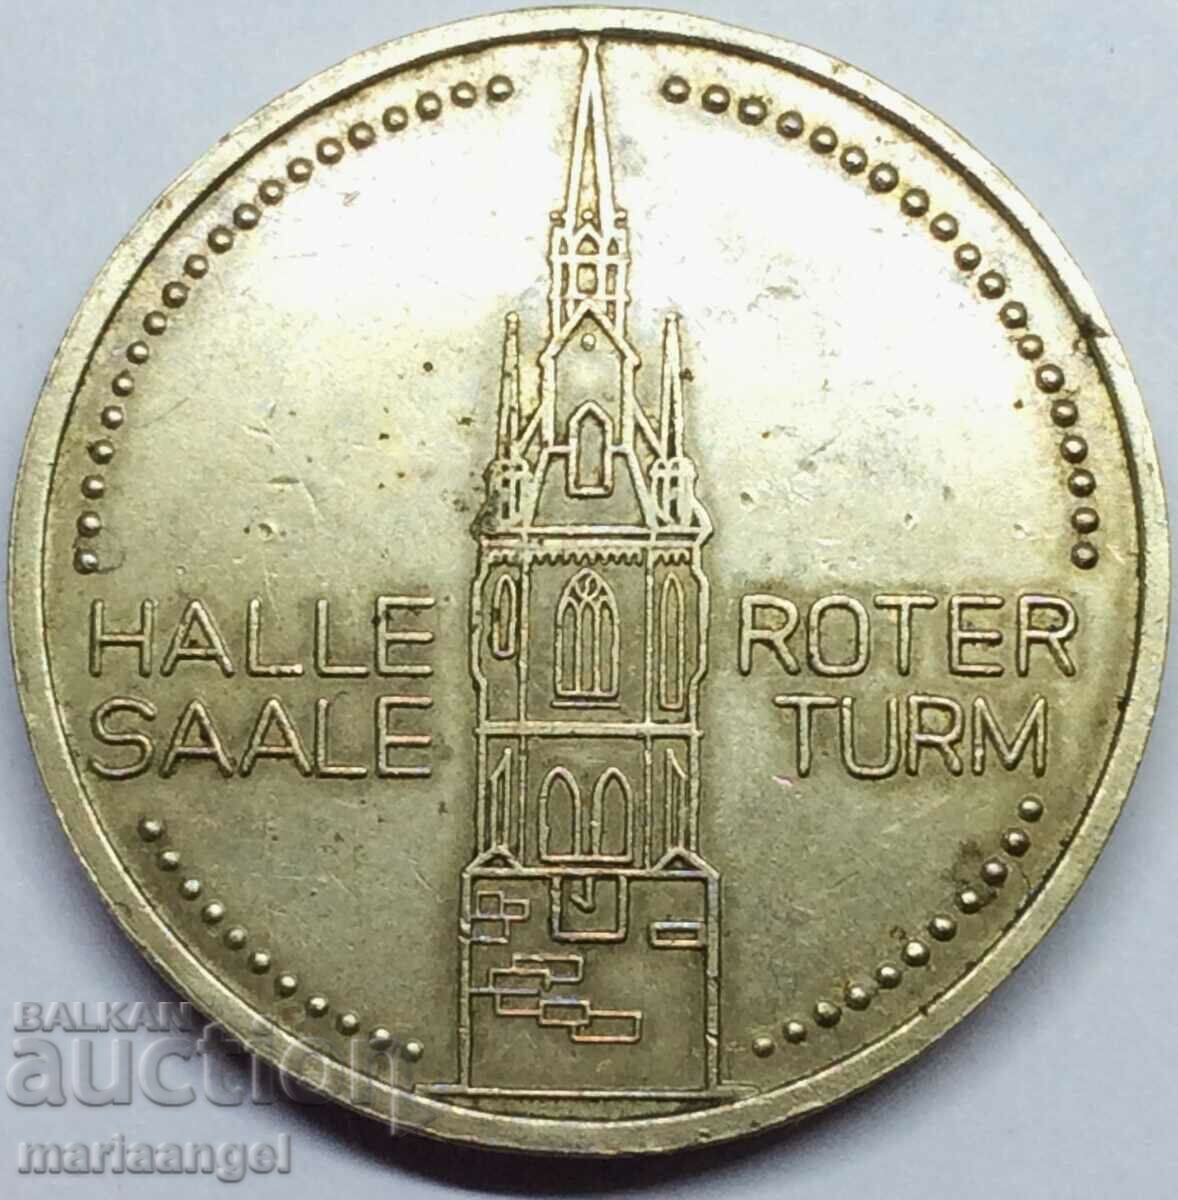 Medalia RDG Turnul Roșu 35mm Haale Saale Roter Turm